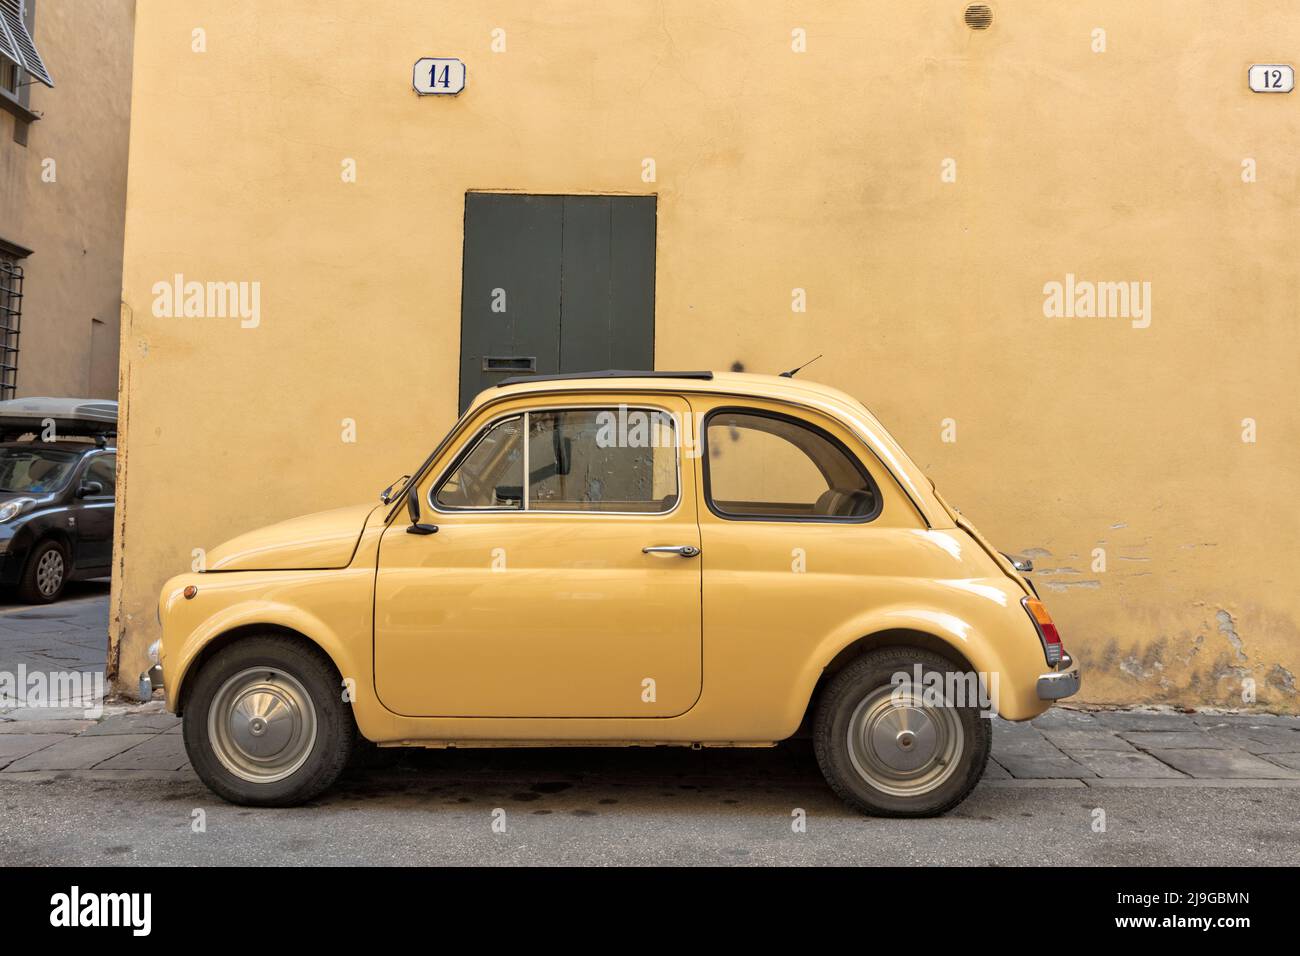 Gelbes Oldtimer Fiat 500 vor der gelben Mauer in einer engen Straße im mittelalterlichen Stadtzentrum von Lucca Stockfoto